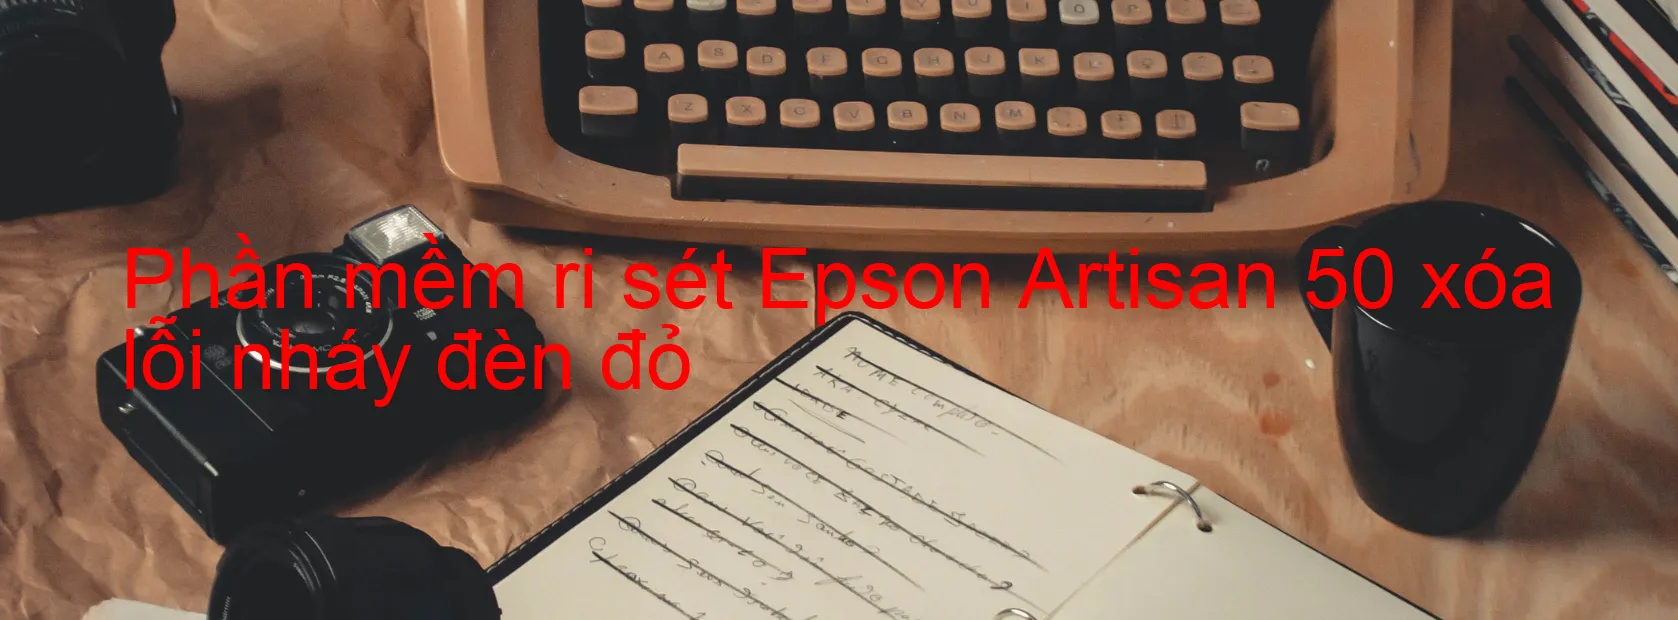 Phần mềm reset Epson Artisan 50 xóa lỗi nháy đèn đỏ